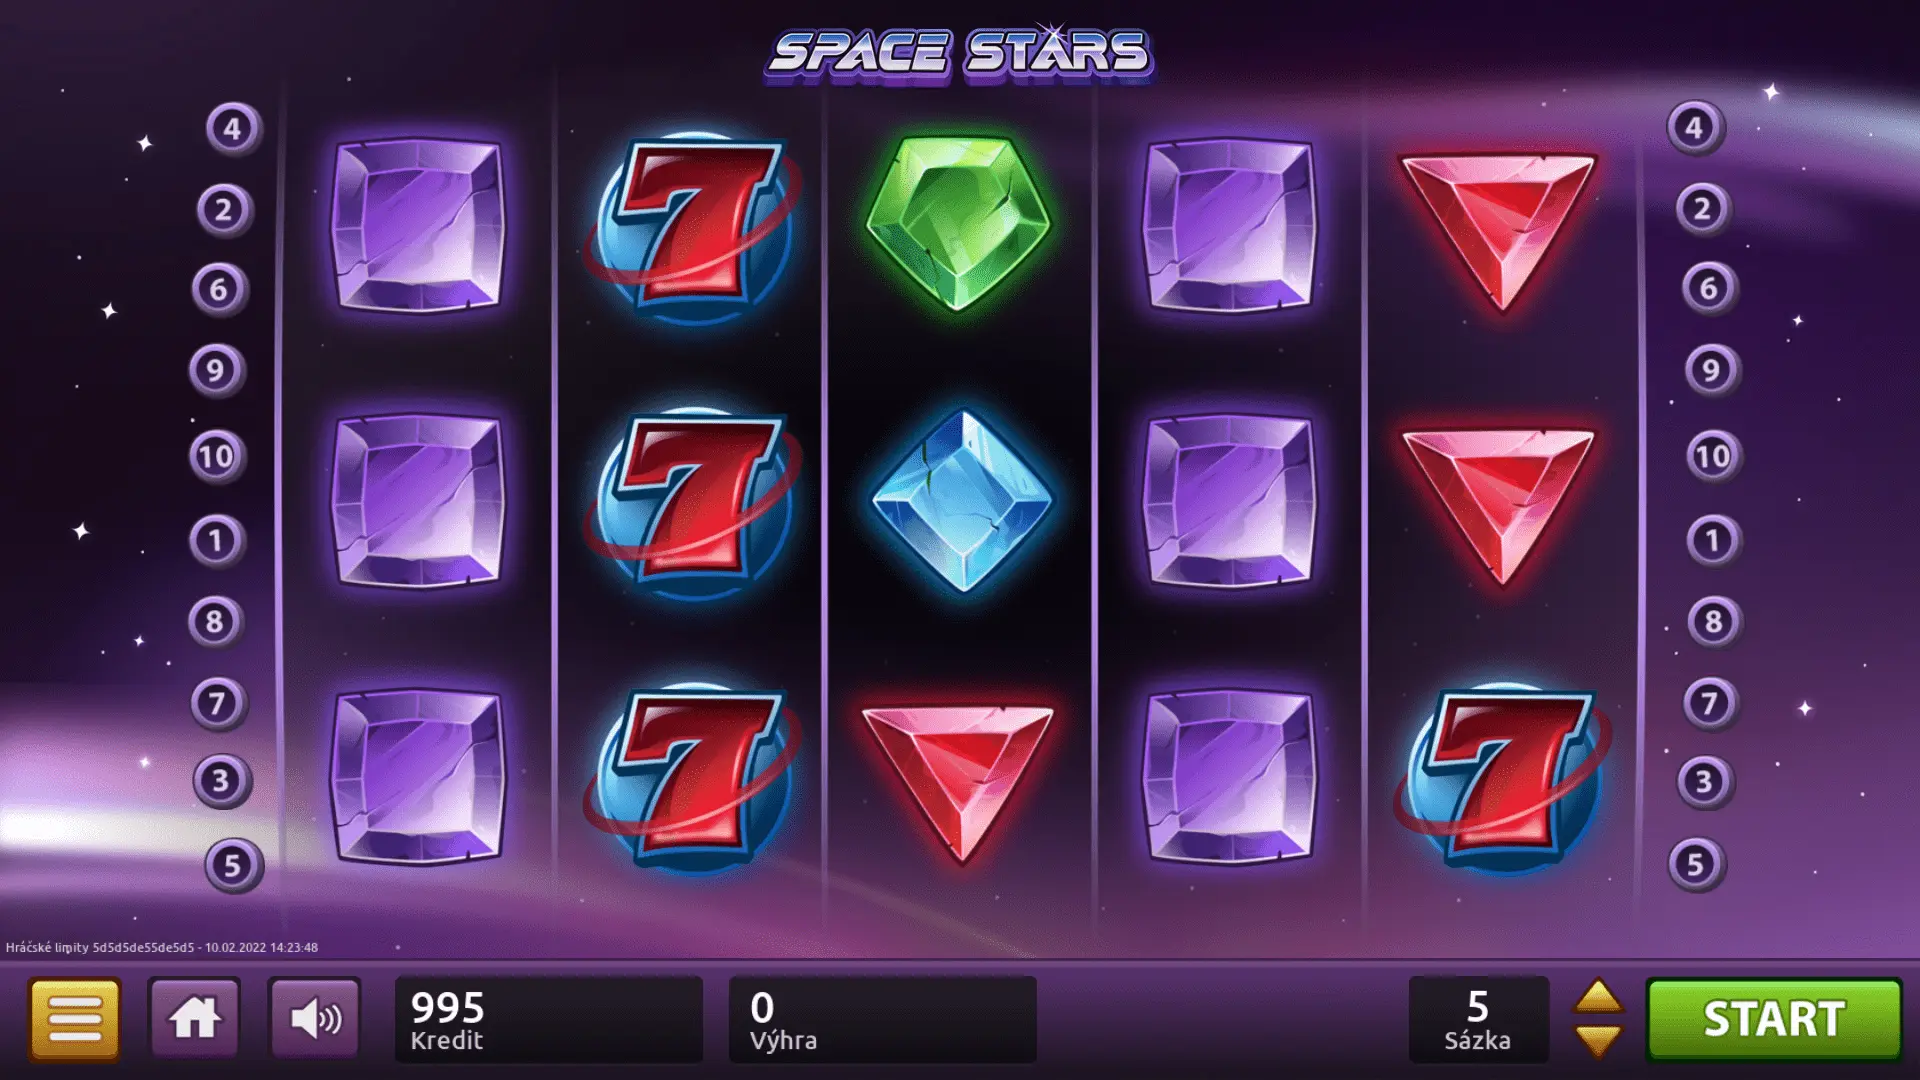 SPACE STARS je hra se pěti válci, obsahuje 8 různých symbolů a 10 výherních linií